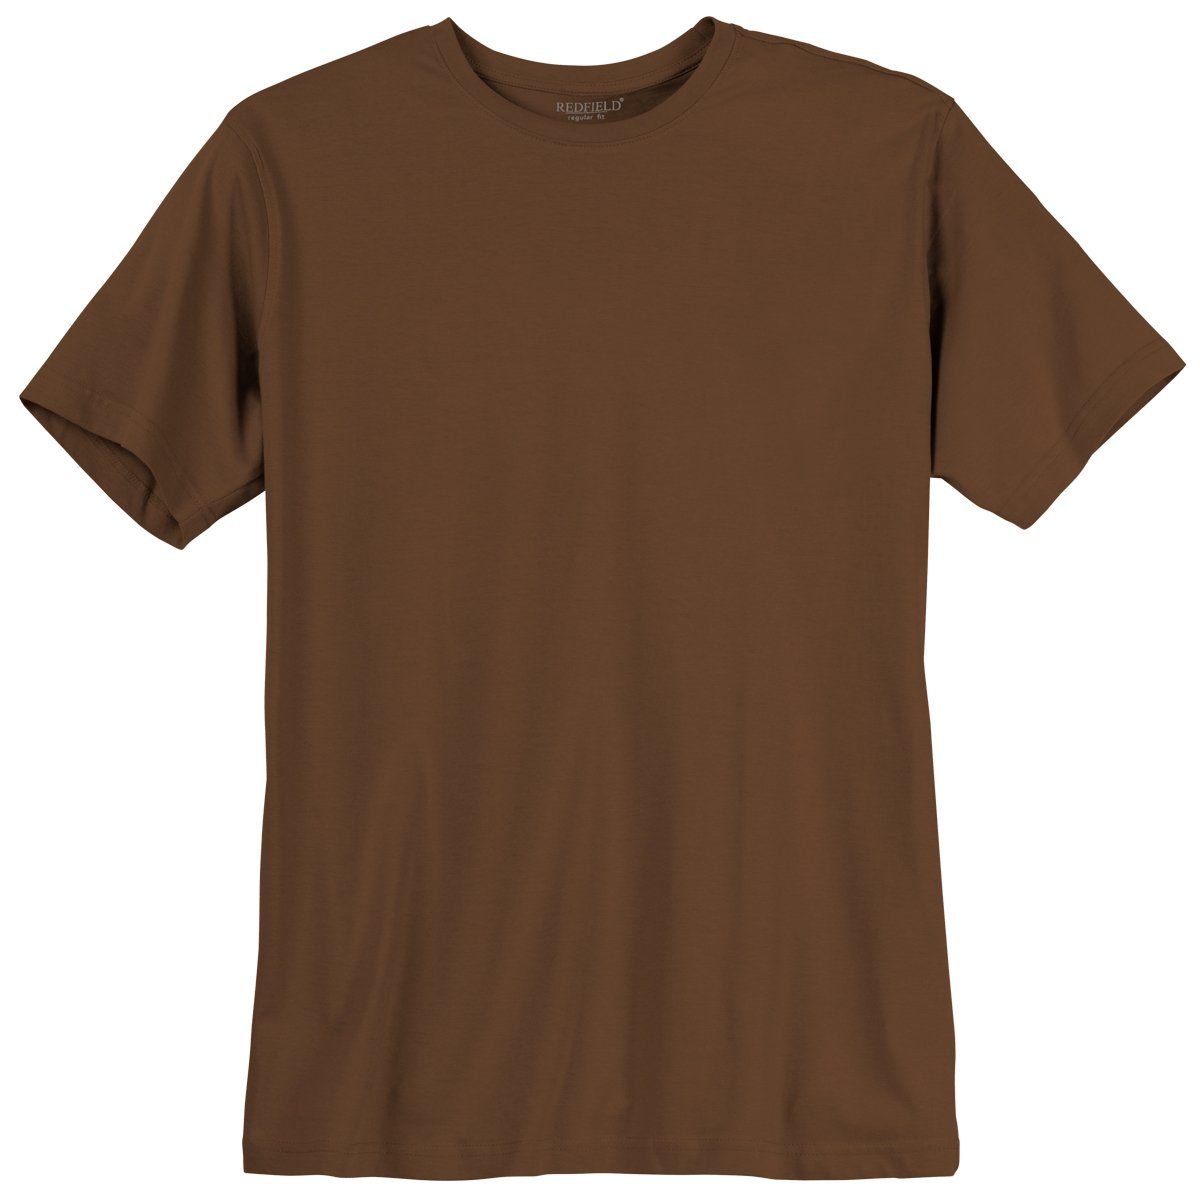 Basic redfield braun Rundhalsshirt T-Shirt Übergrößen Redfield